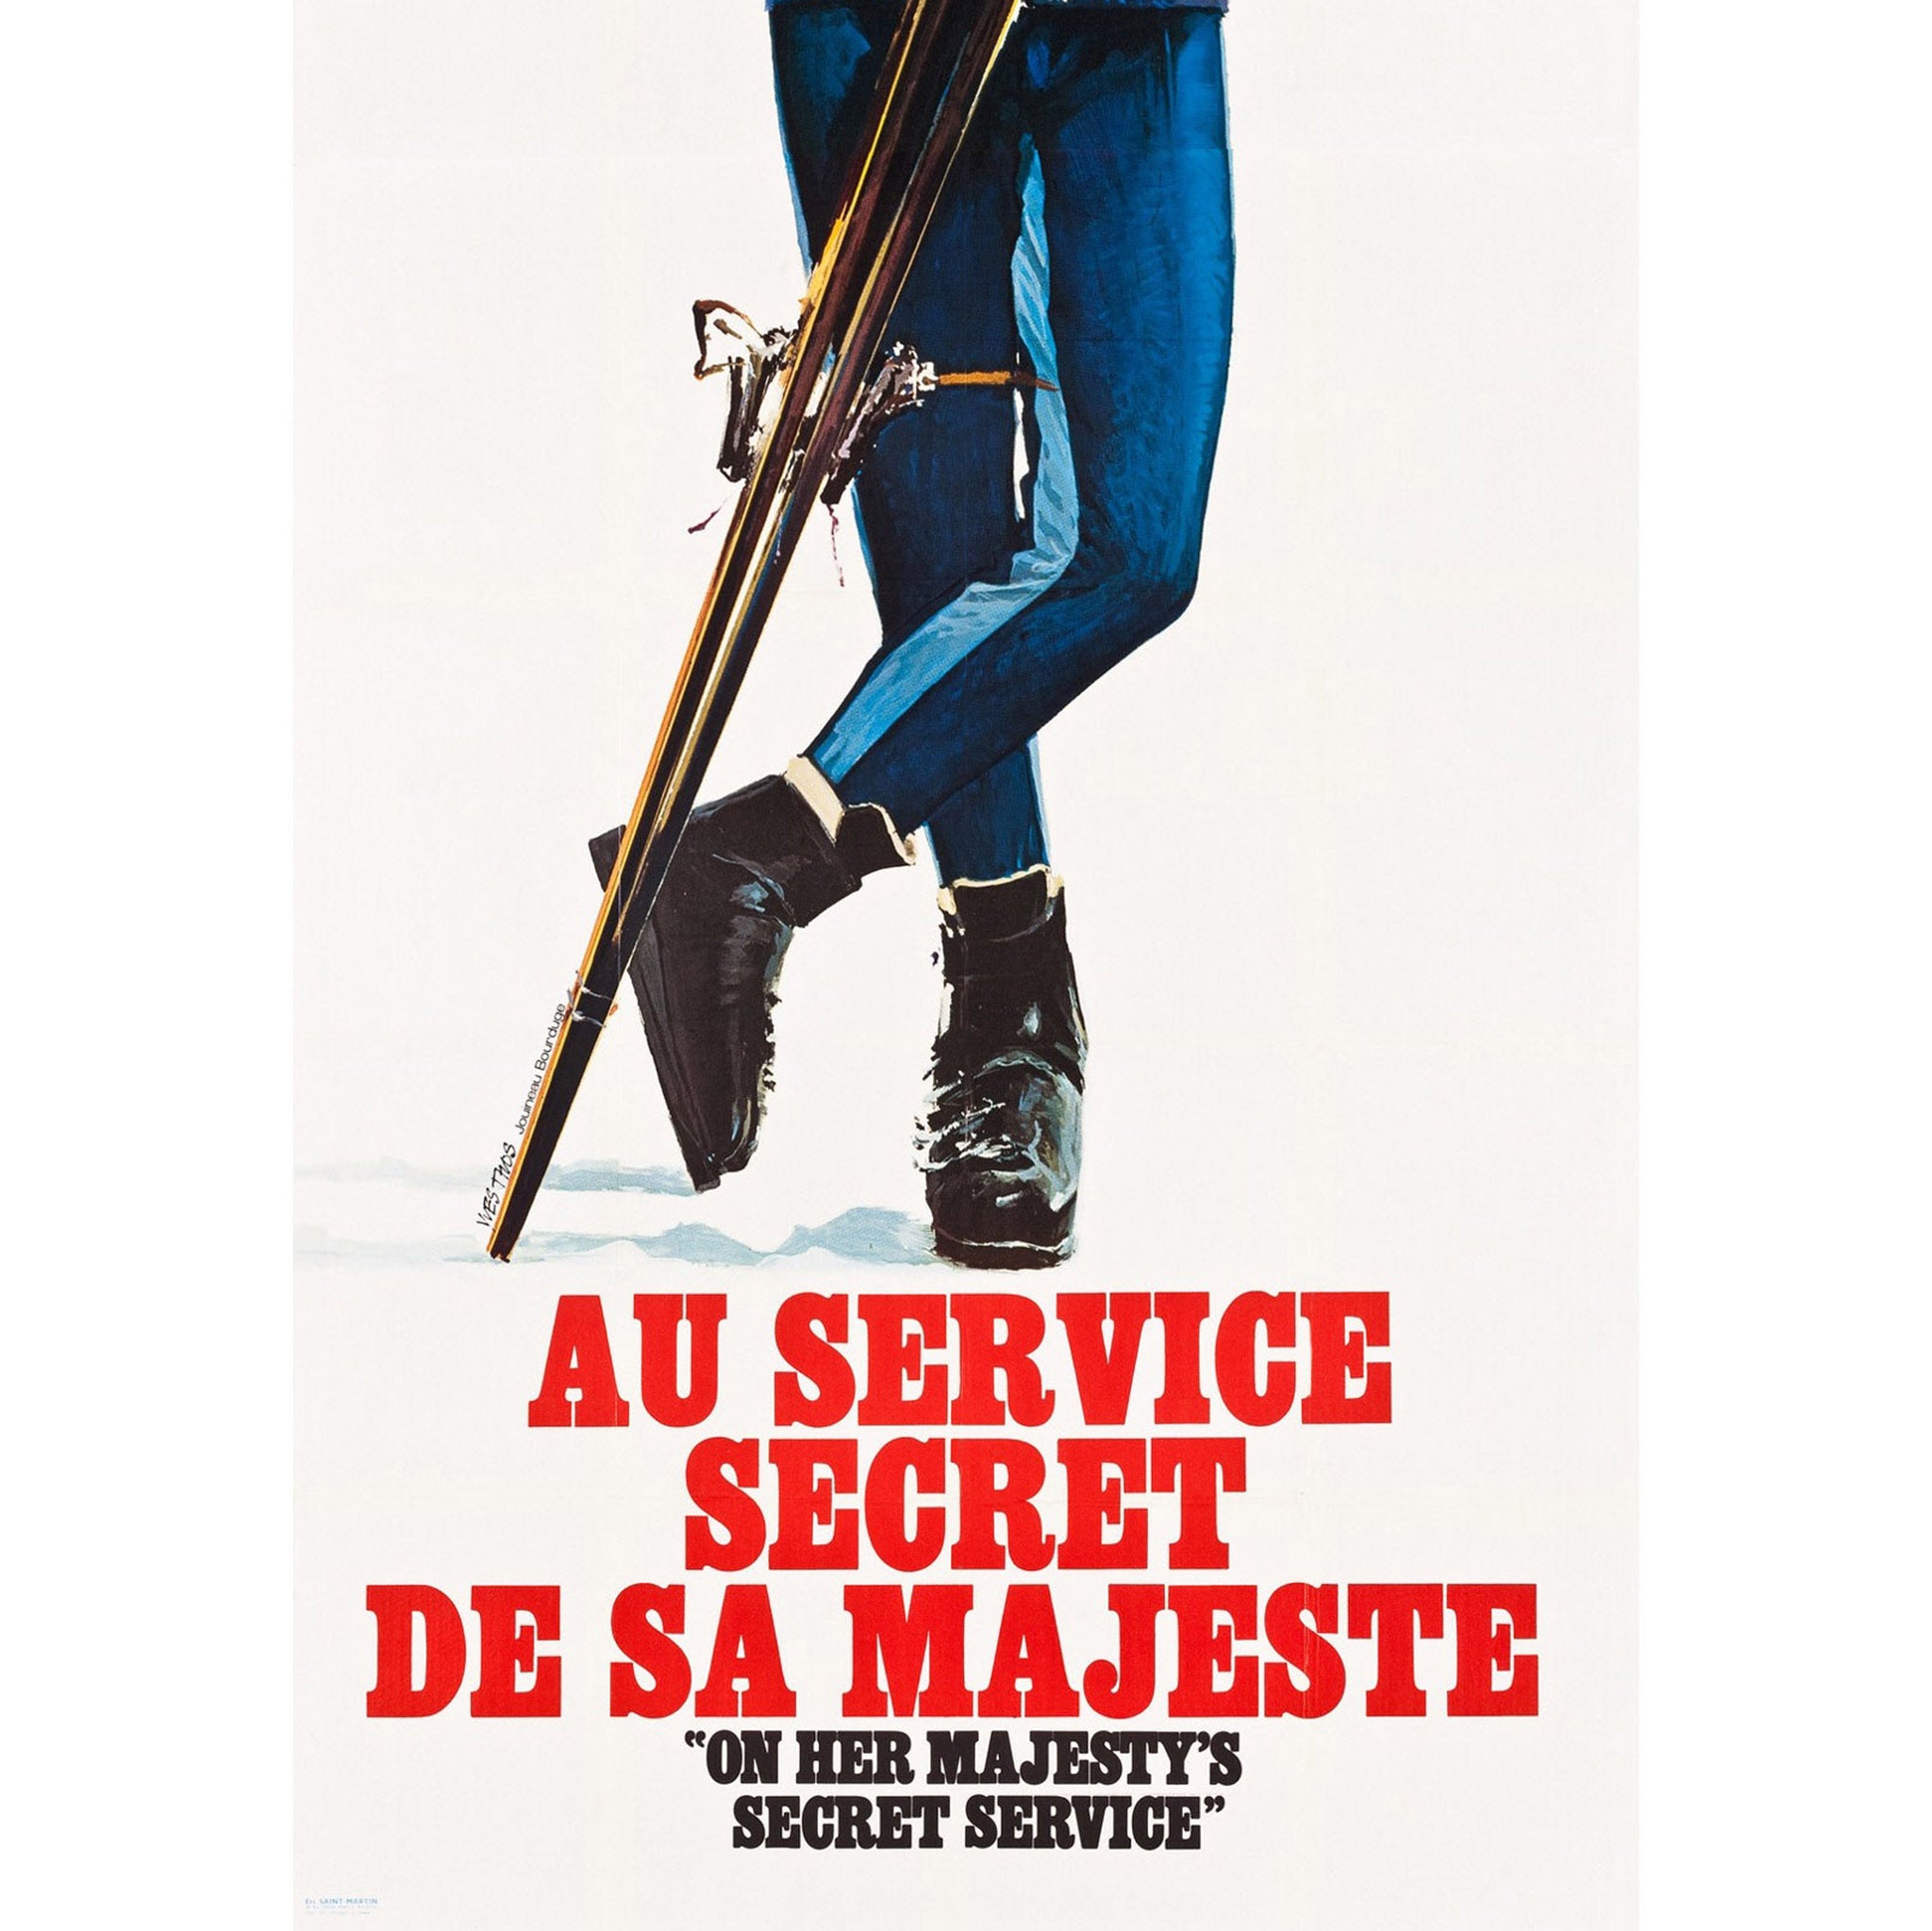 James Bond On Her Majesty's Secret Service French Poster